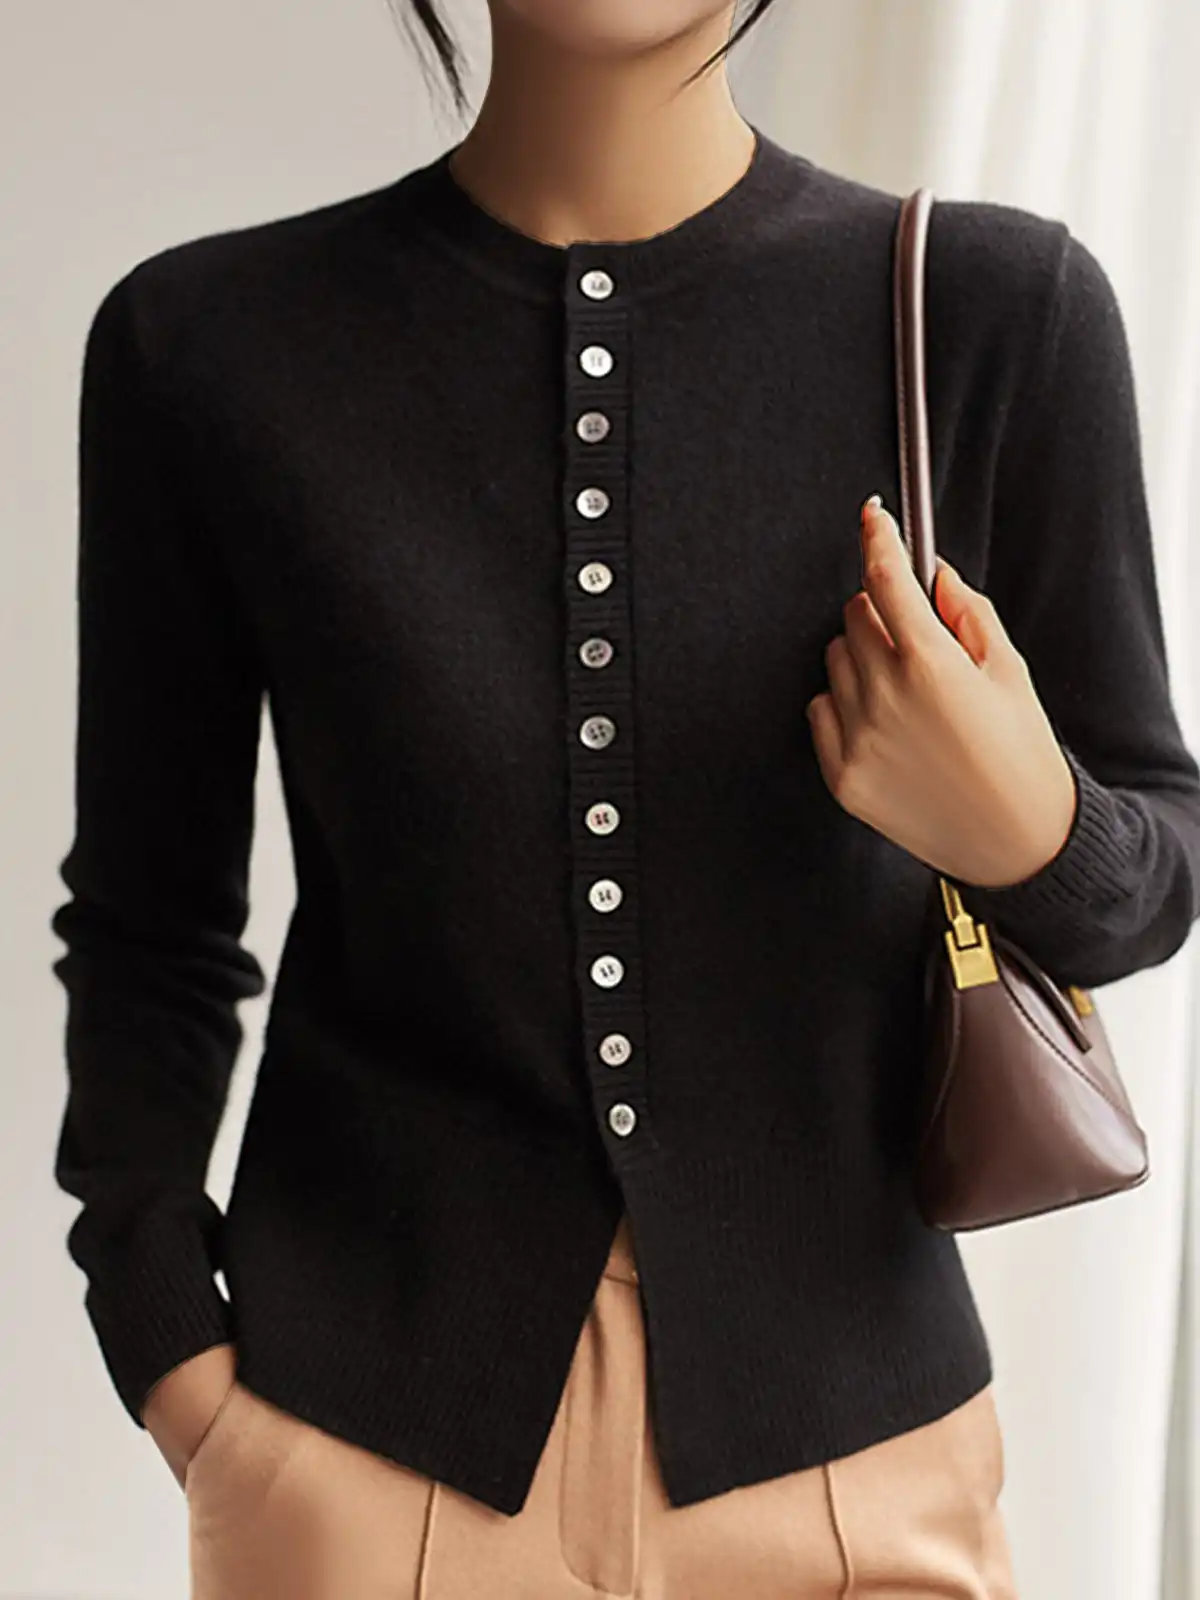 Shop Women's Sweaters| Oversized Women's Sweaters & Cardigans ...